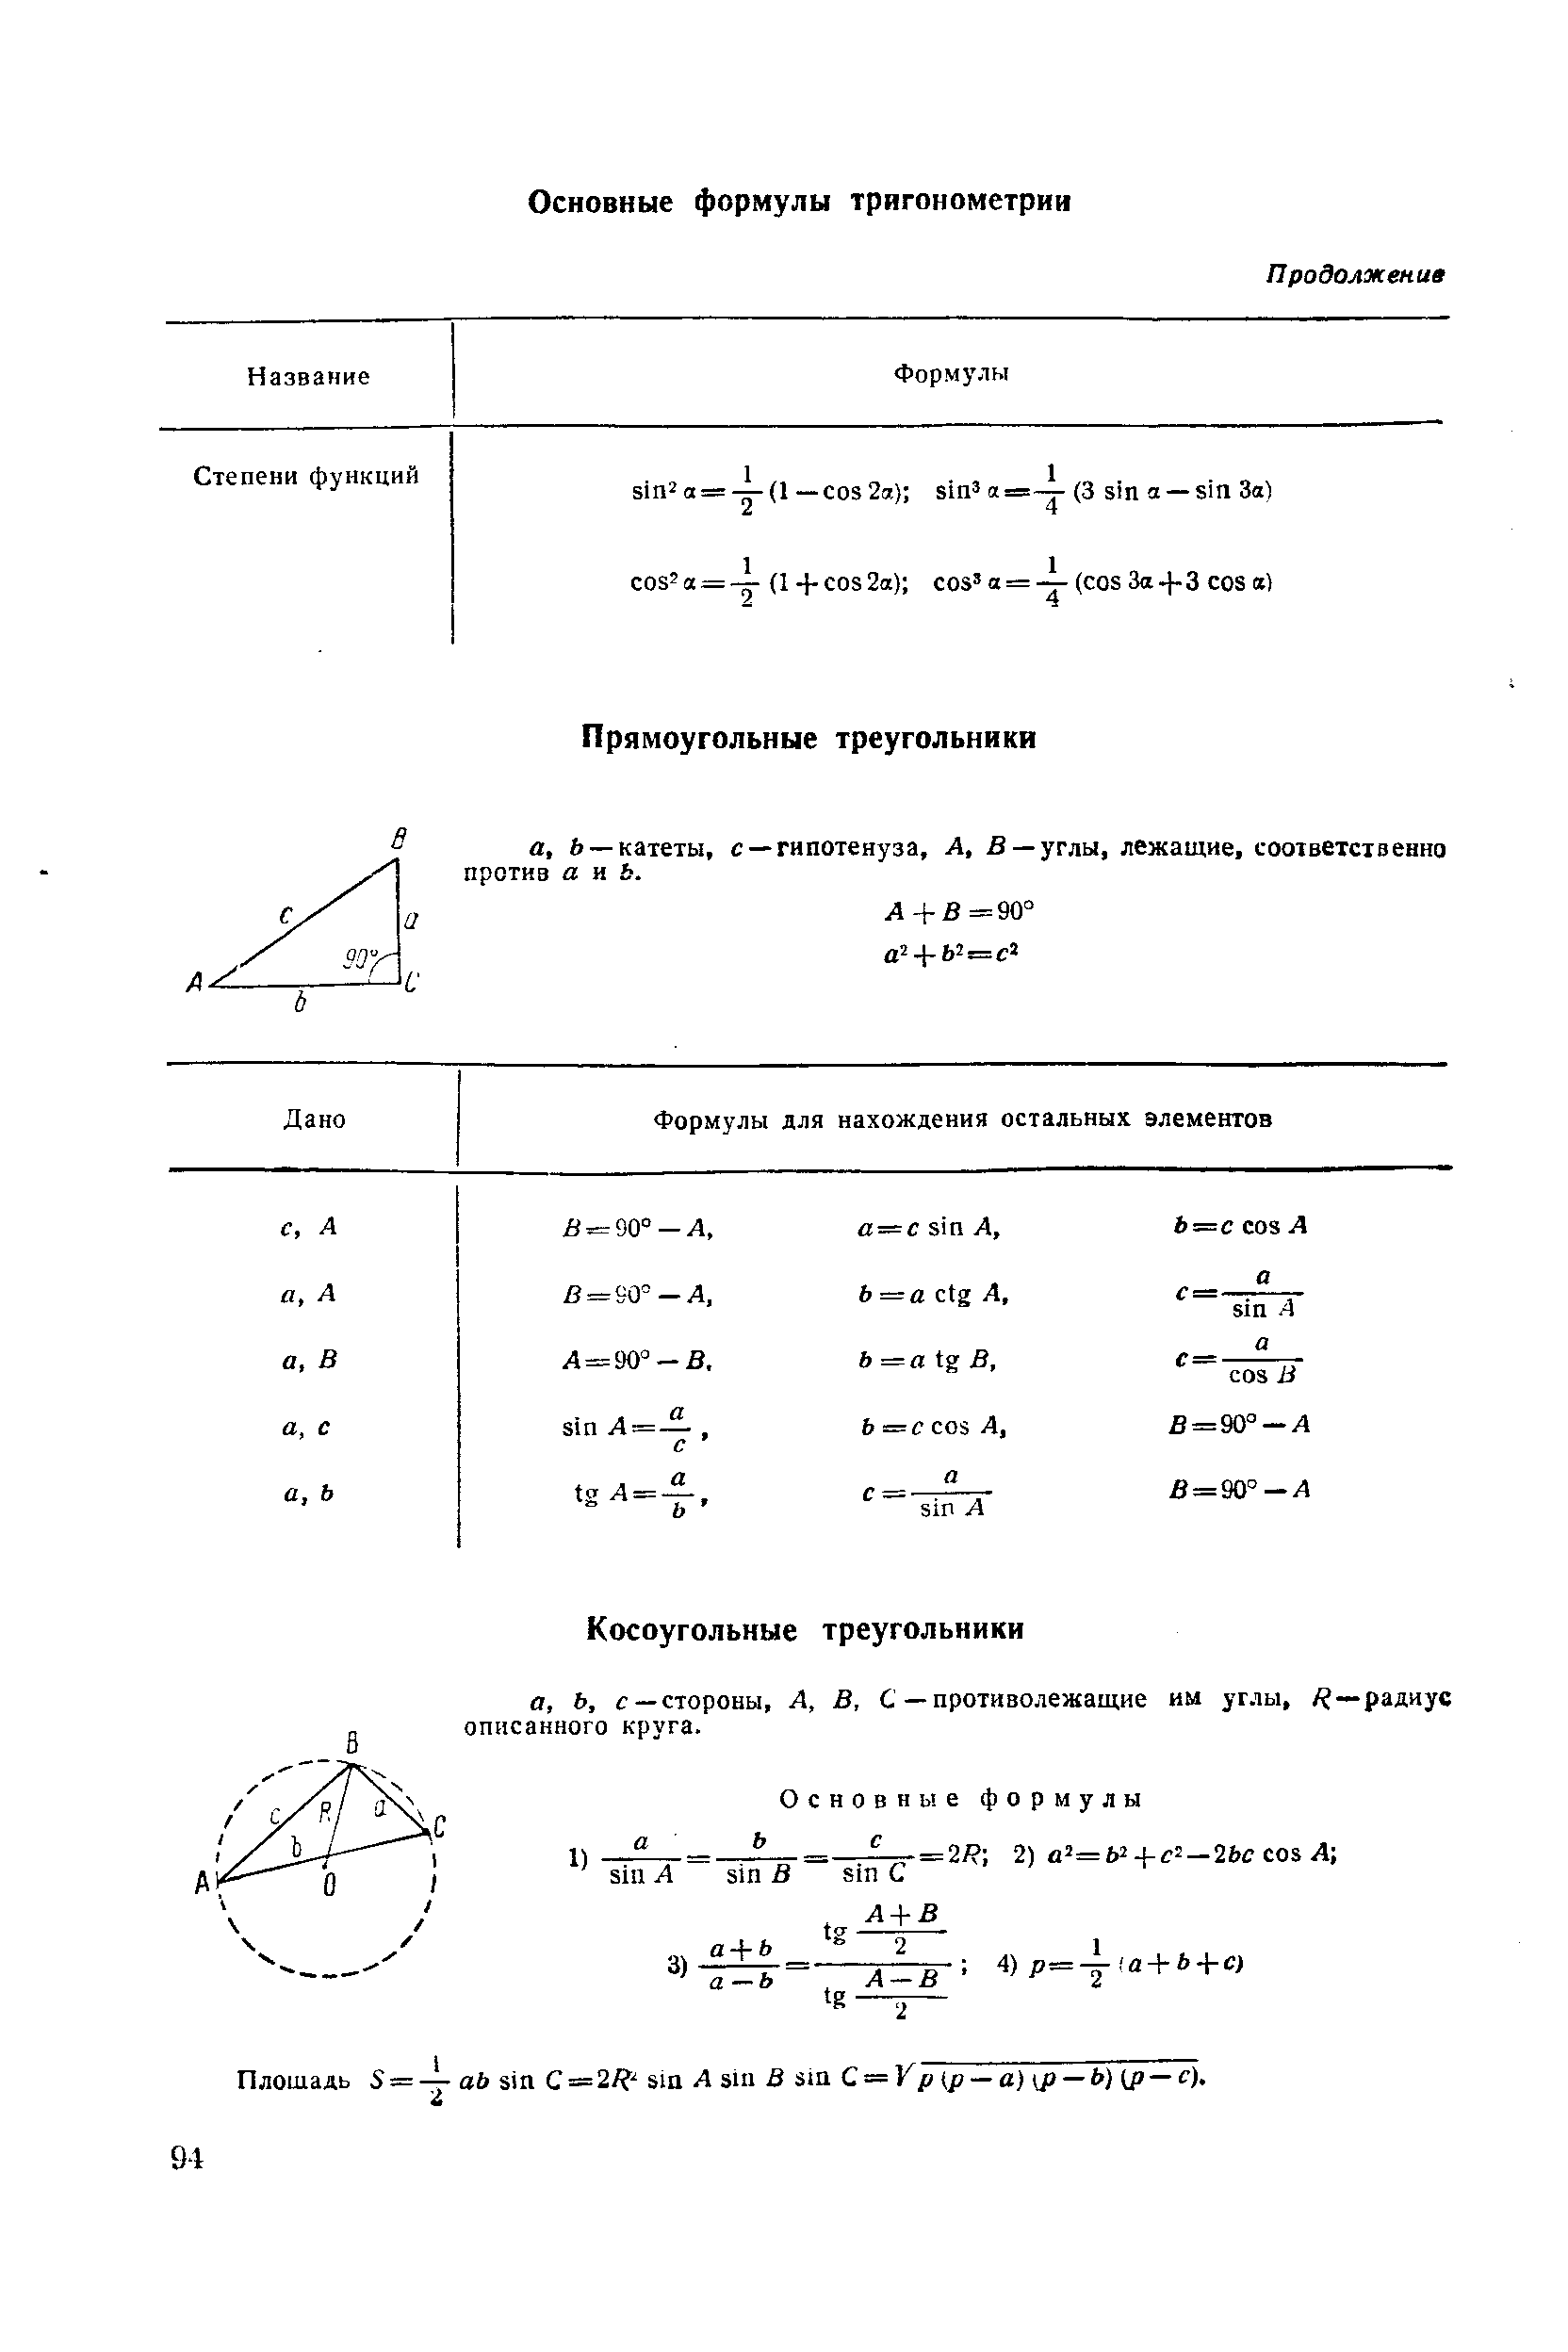 Плошадь S =— ab sin С=2/ sm A sin В sm = Kp (p —e) y) —i ) (p — ).